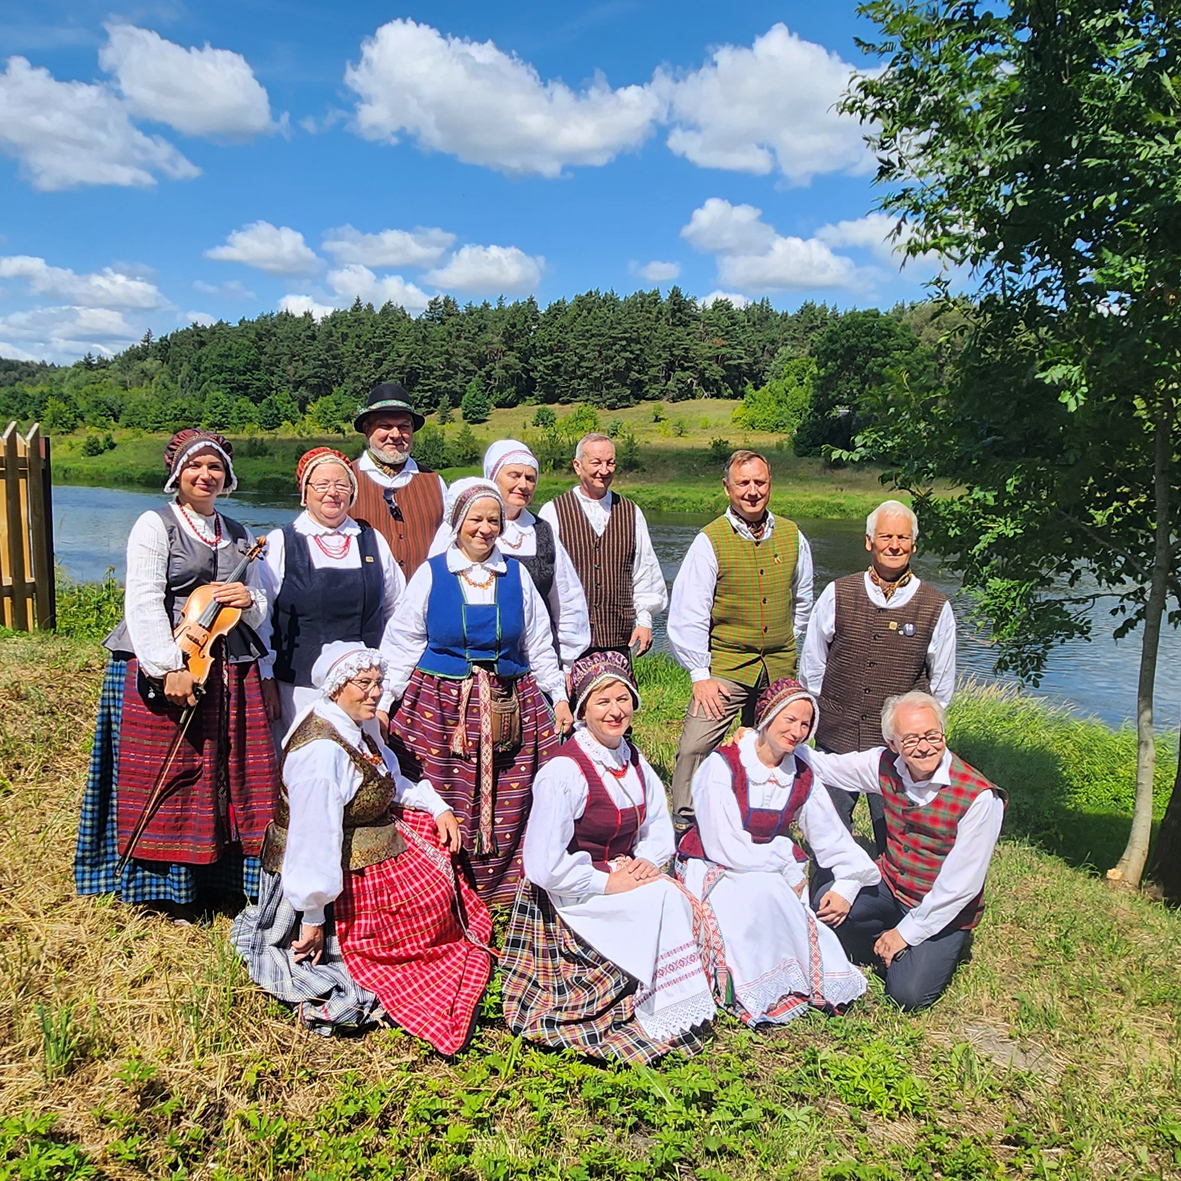 Elektrėnai – geografinis Dzūkijos pakraštys: folkloro ansamblyje „Runga“ būrėsi įvairių tarmių šeimos, kurioms rūpėjo lietuviškos tradicijos bei vertybės